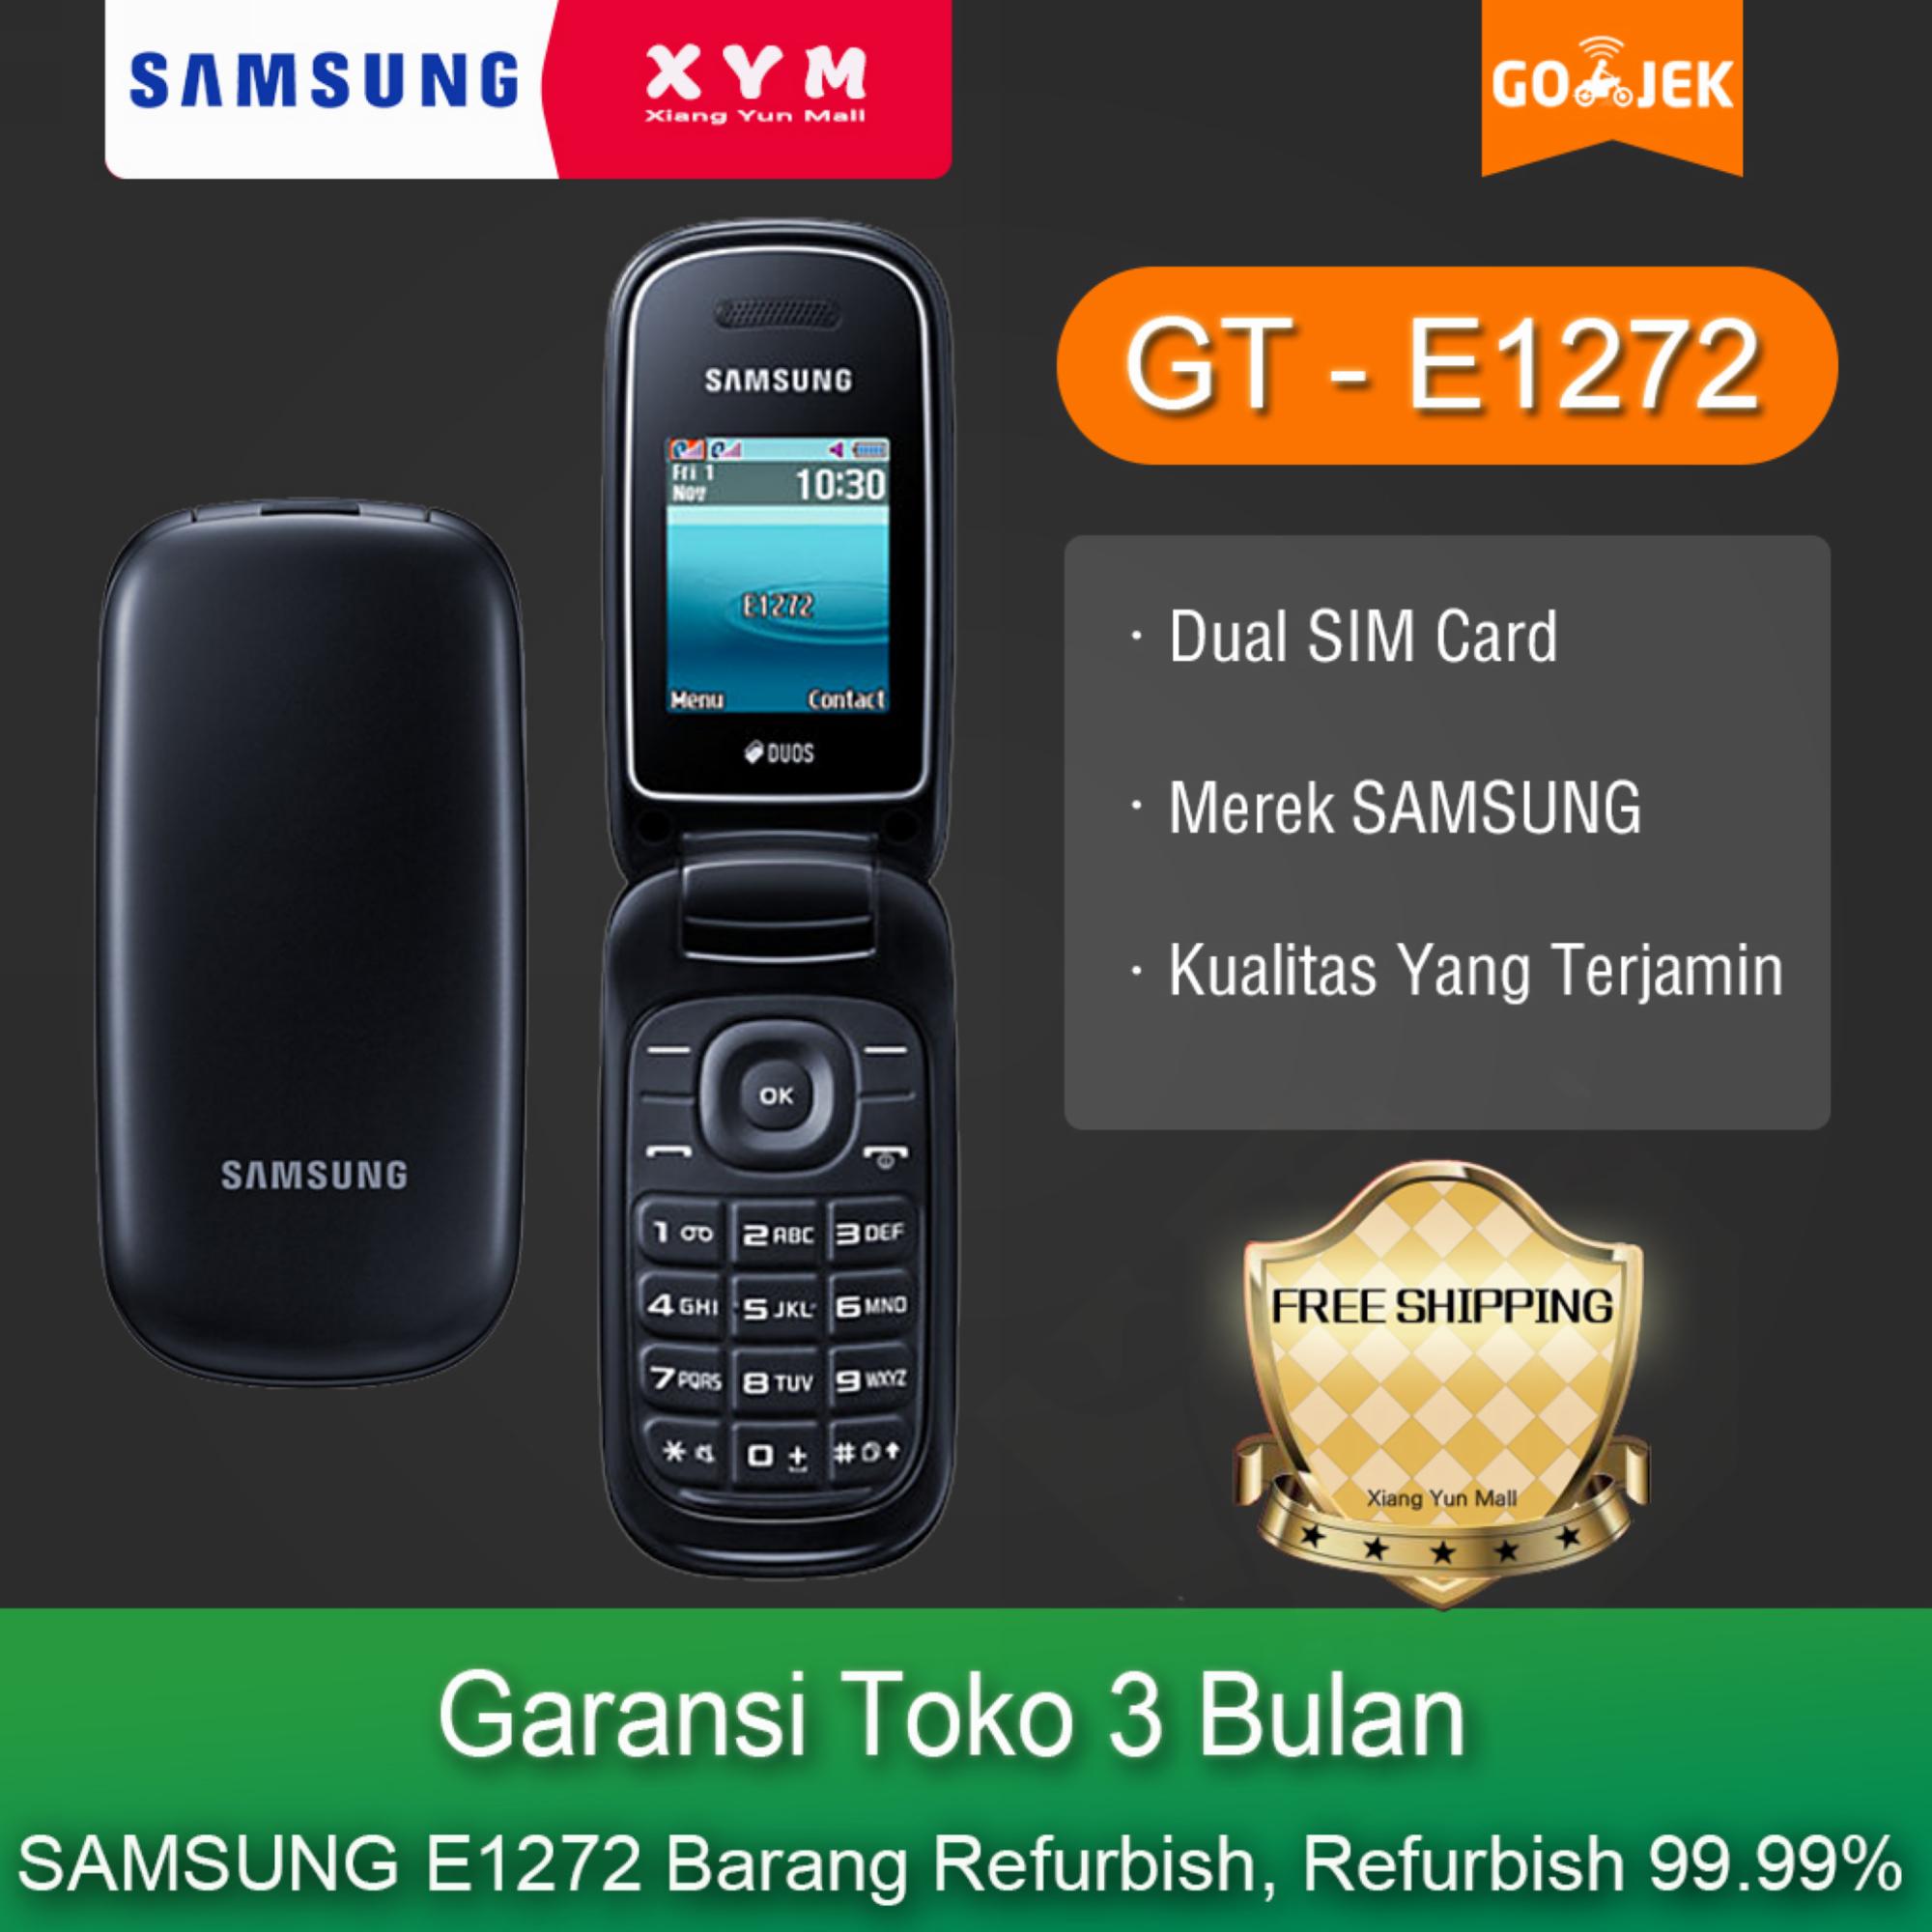 SAMSUNG E1272 - Garansi Toko 3 Bulan Samsumg Kualitas Yang Terjamin  Dual SIM Card Merek (Refurbish) 